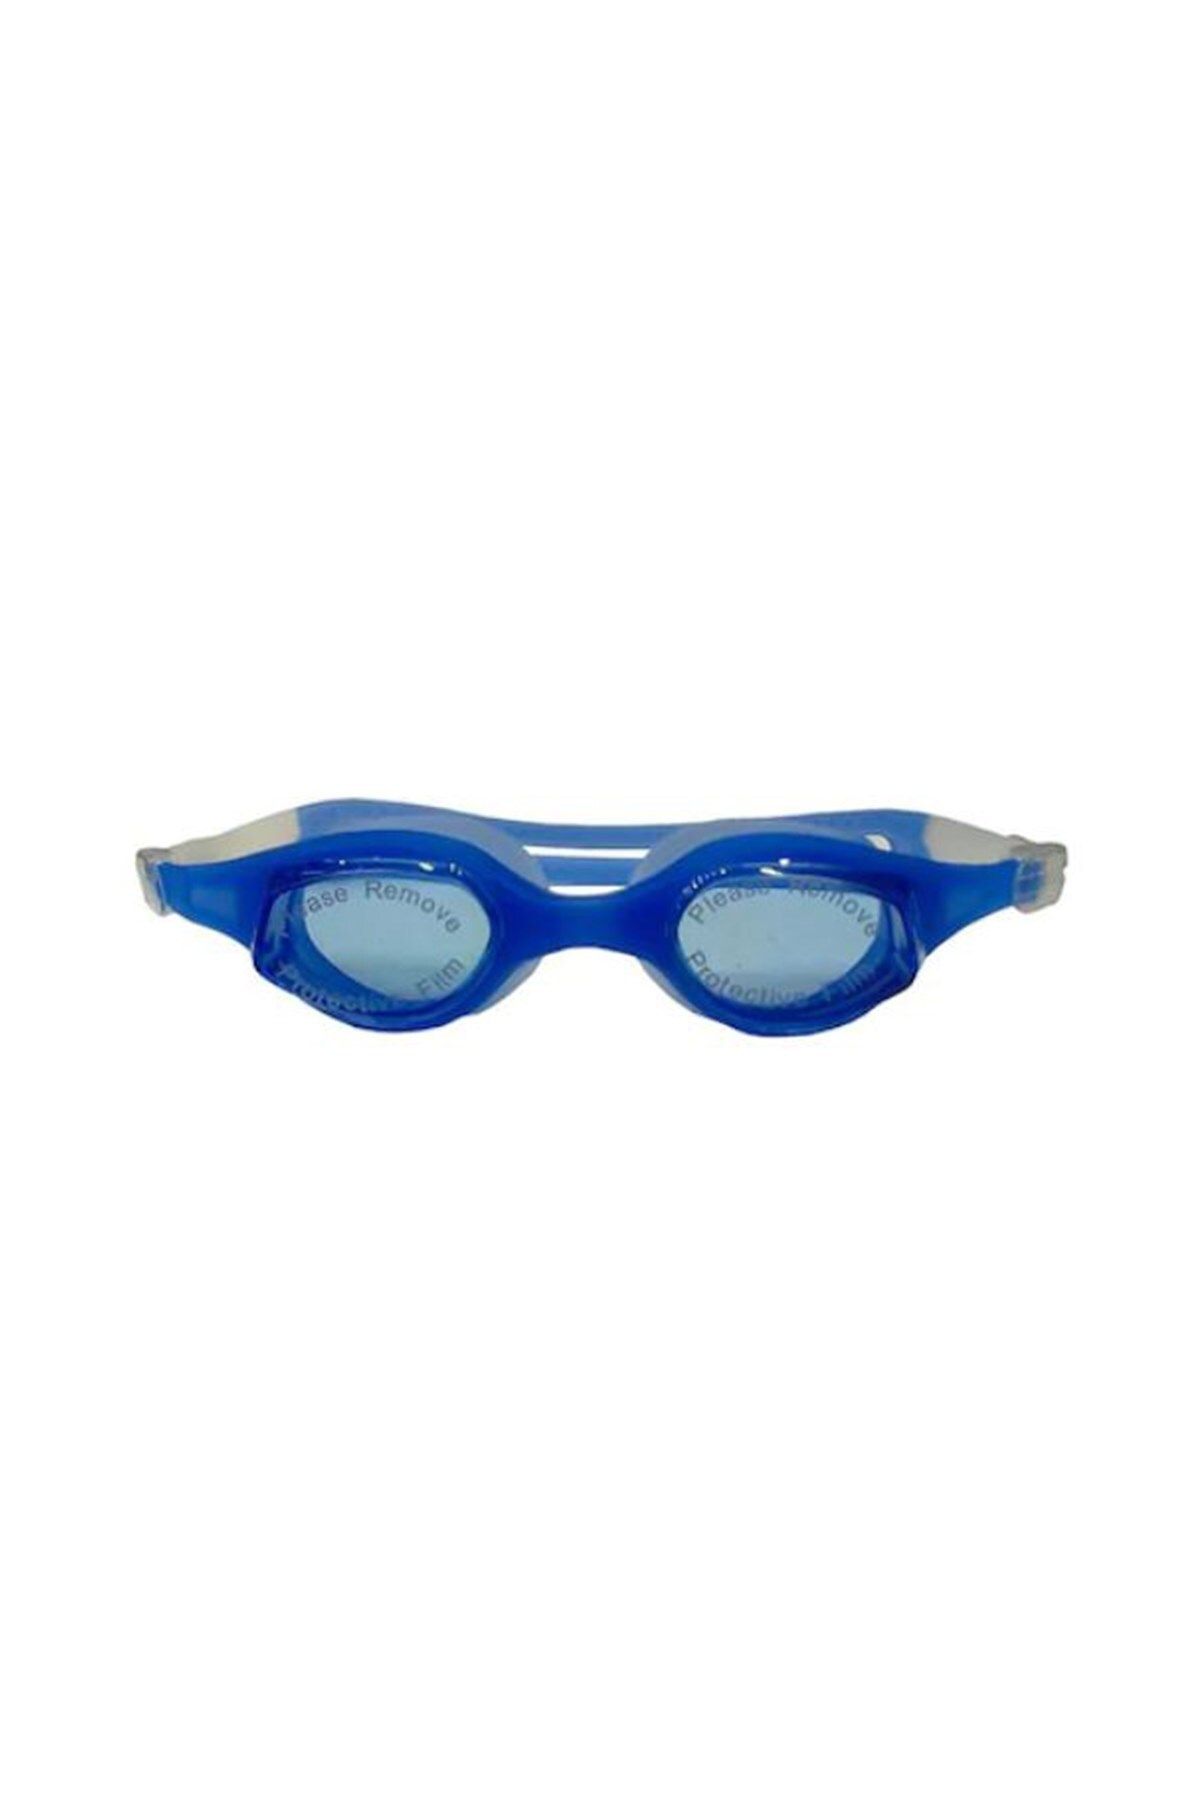 SELEX Unisex Mavi Yüzücü Gözlüğü Sg-2900 Mavi-mavi